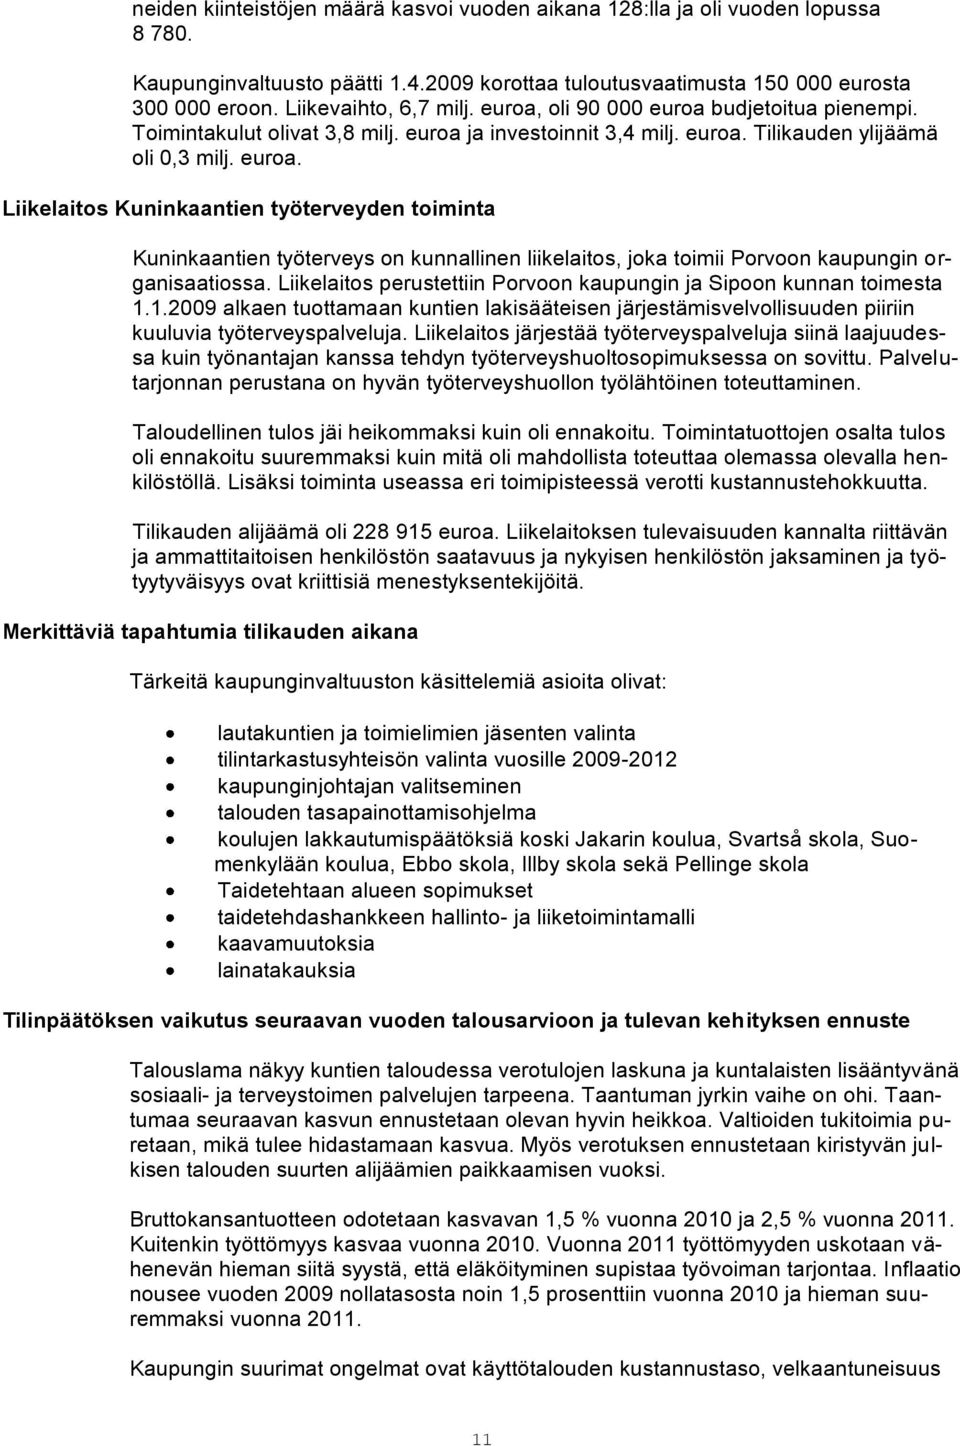 Liikelaitos perustettiin Porvoon kaupungin ja Sipoon kunnan toimesta 1.1.2009 alkaen tuottamaan kuntien lakisääteisen järjestämisvelvollisuuden piiriin kuuluvia työterveyspalveluja.